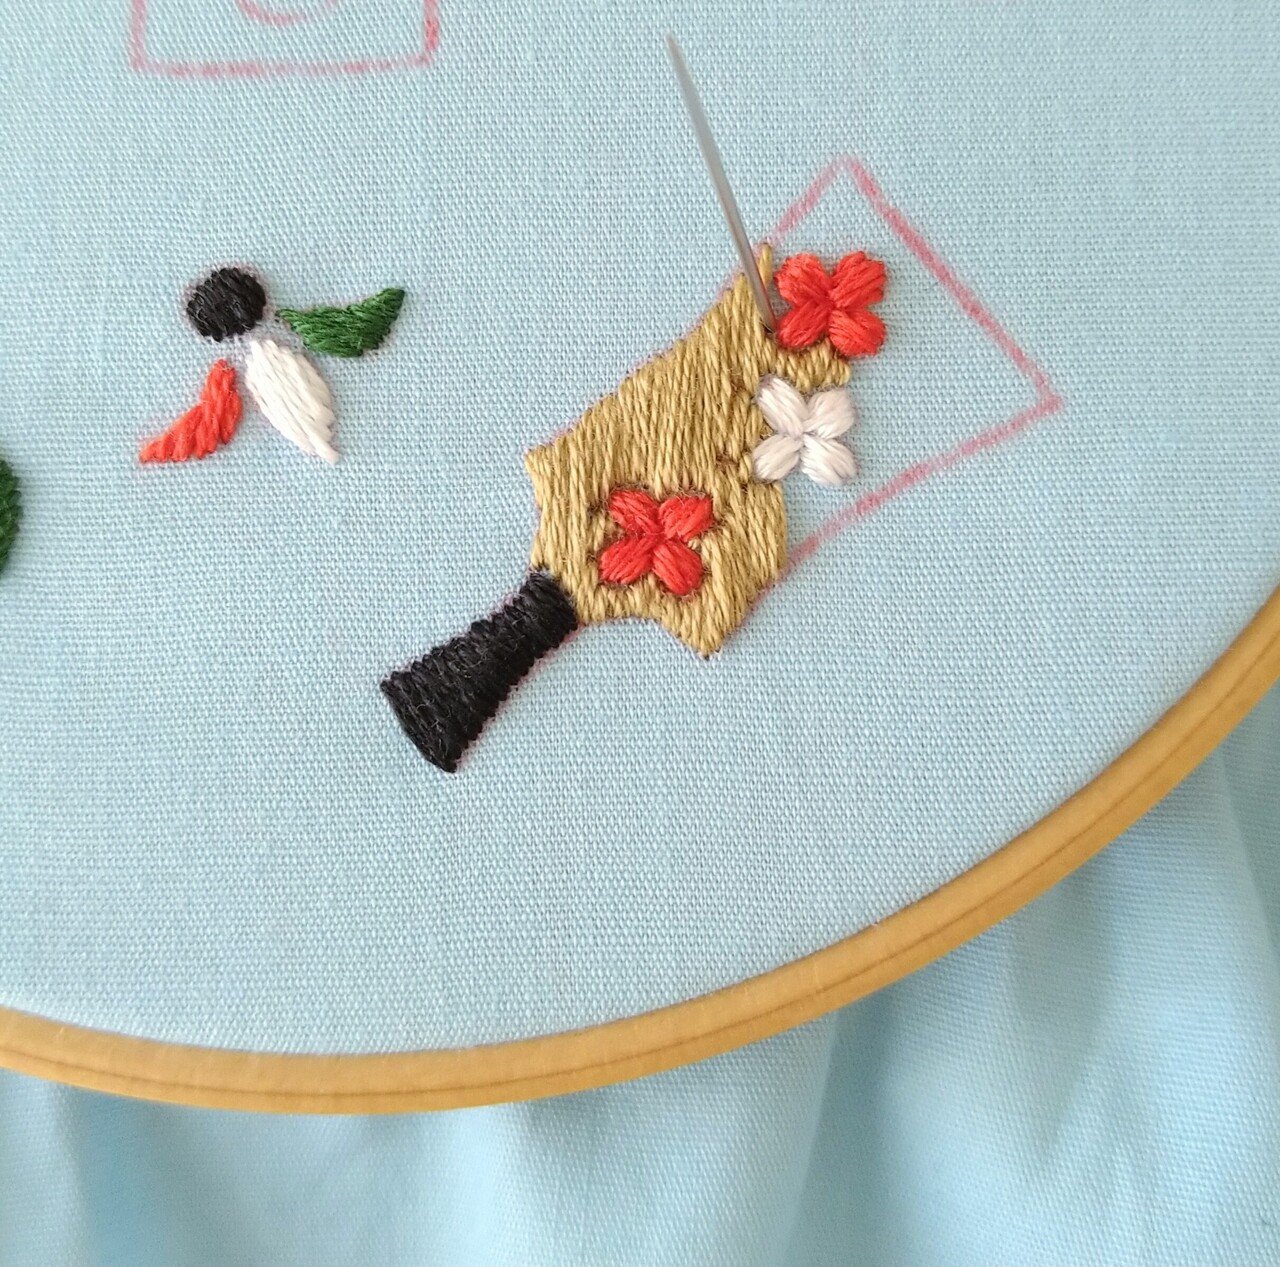 お正月の刺繍枠キットを作ろう🎍 ステップ12 〜羽子板の刺繍5